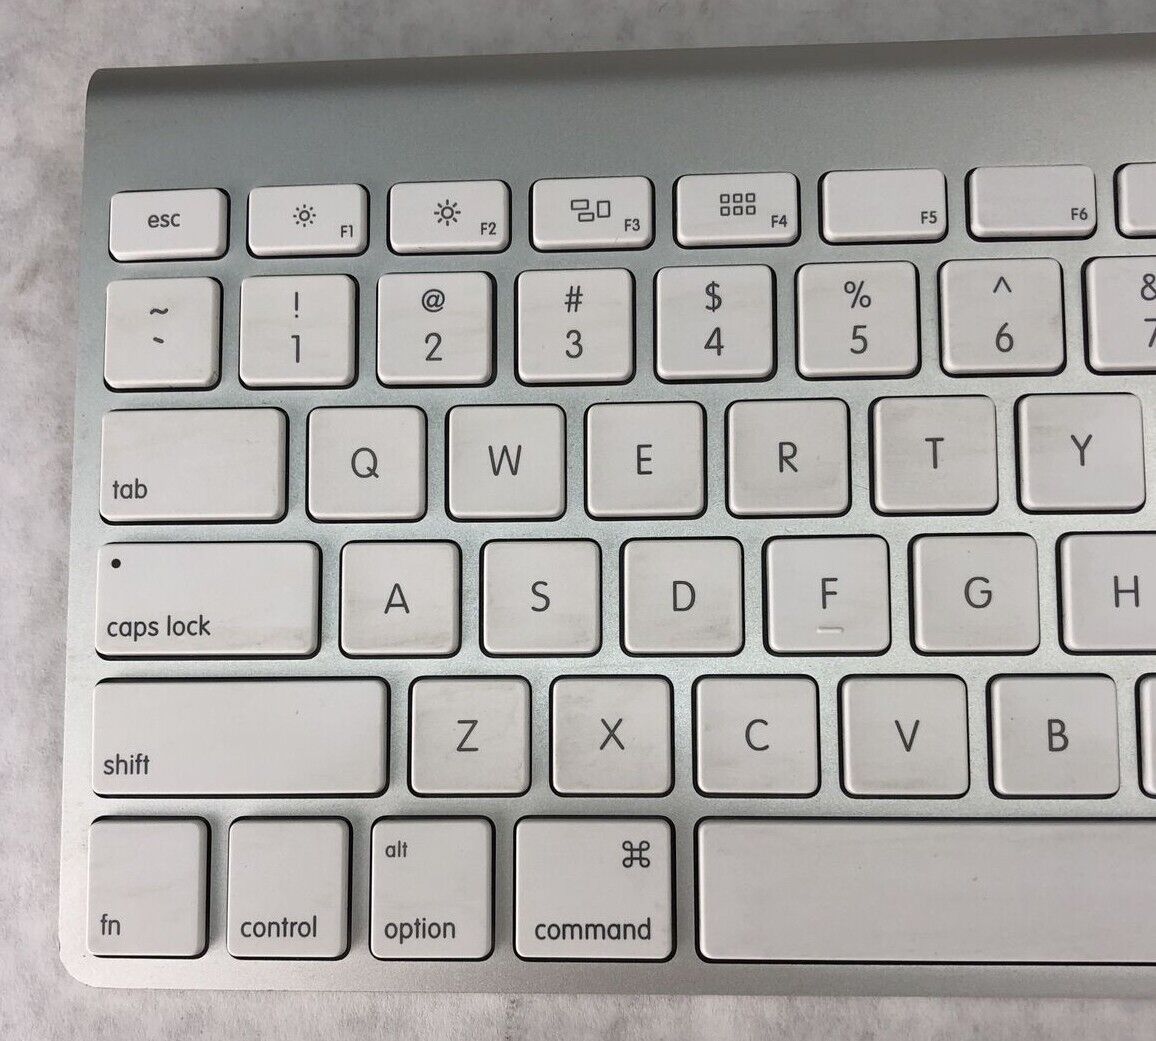 Apple A1314 Wireless Keyboard Missing (O) Key